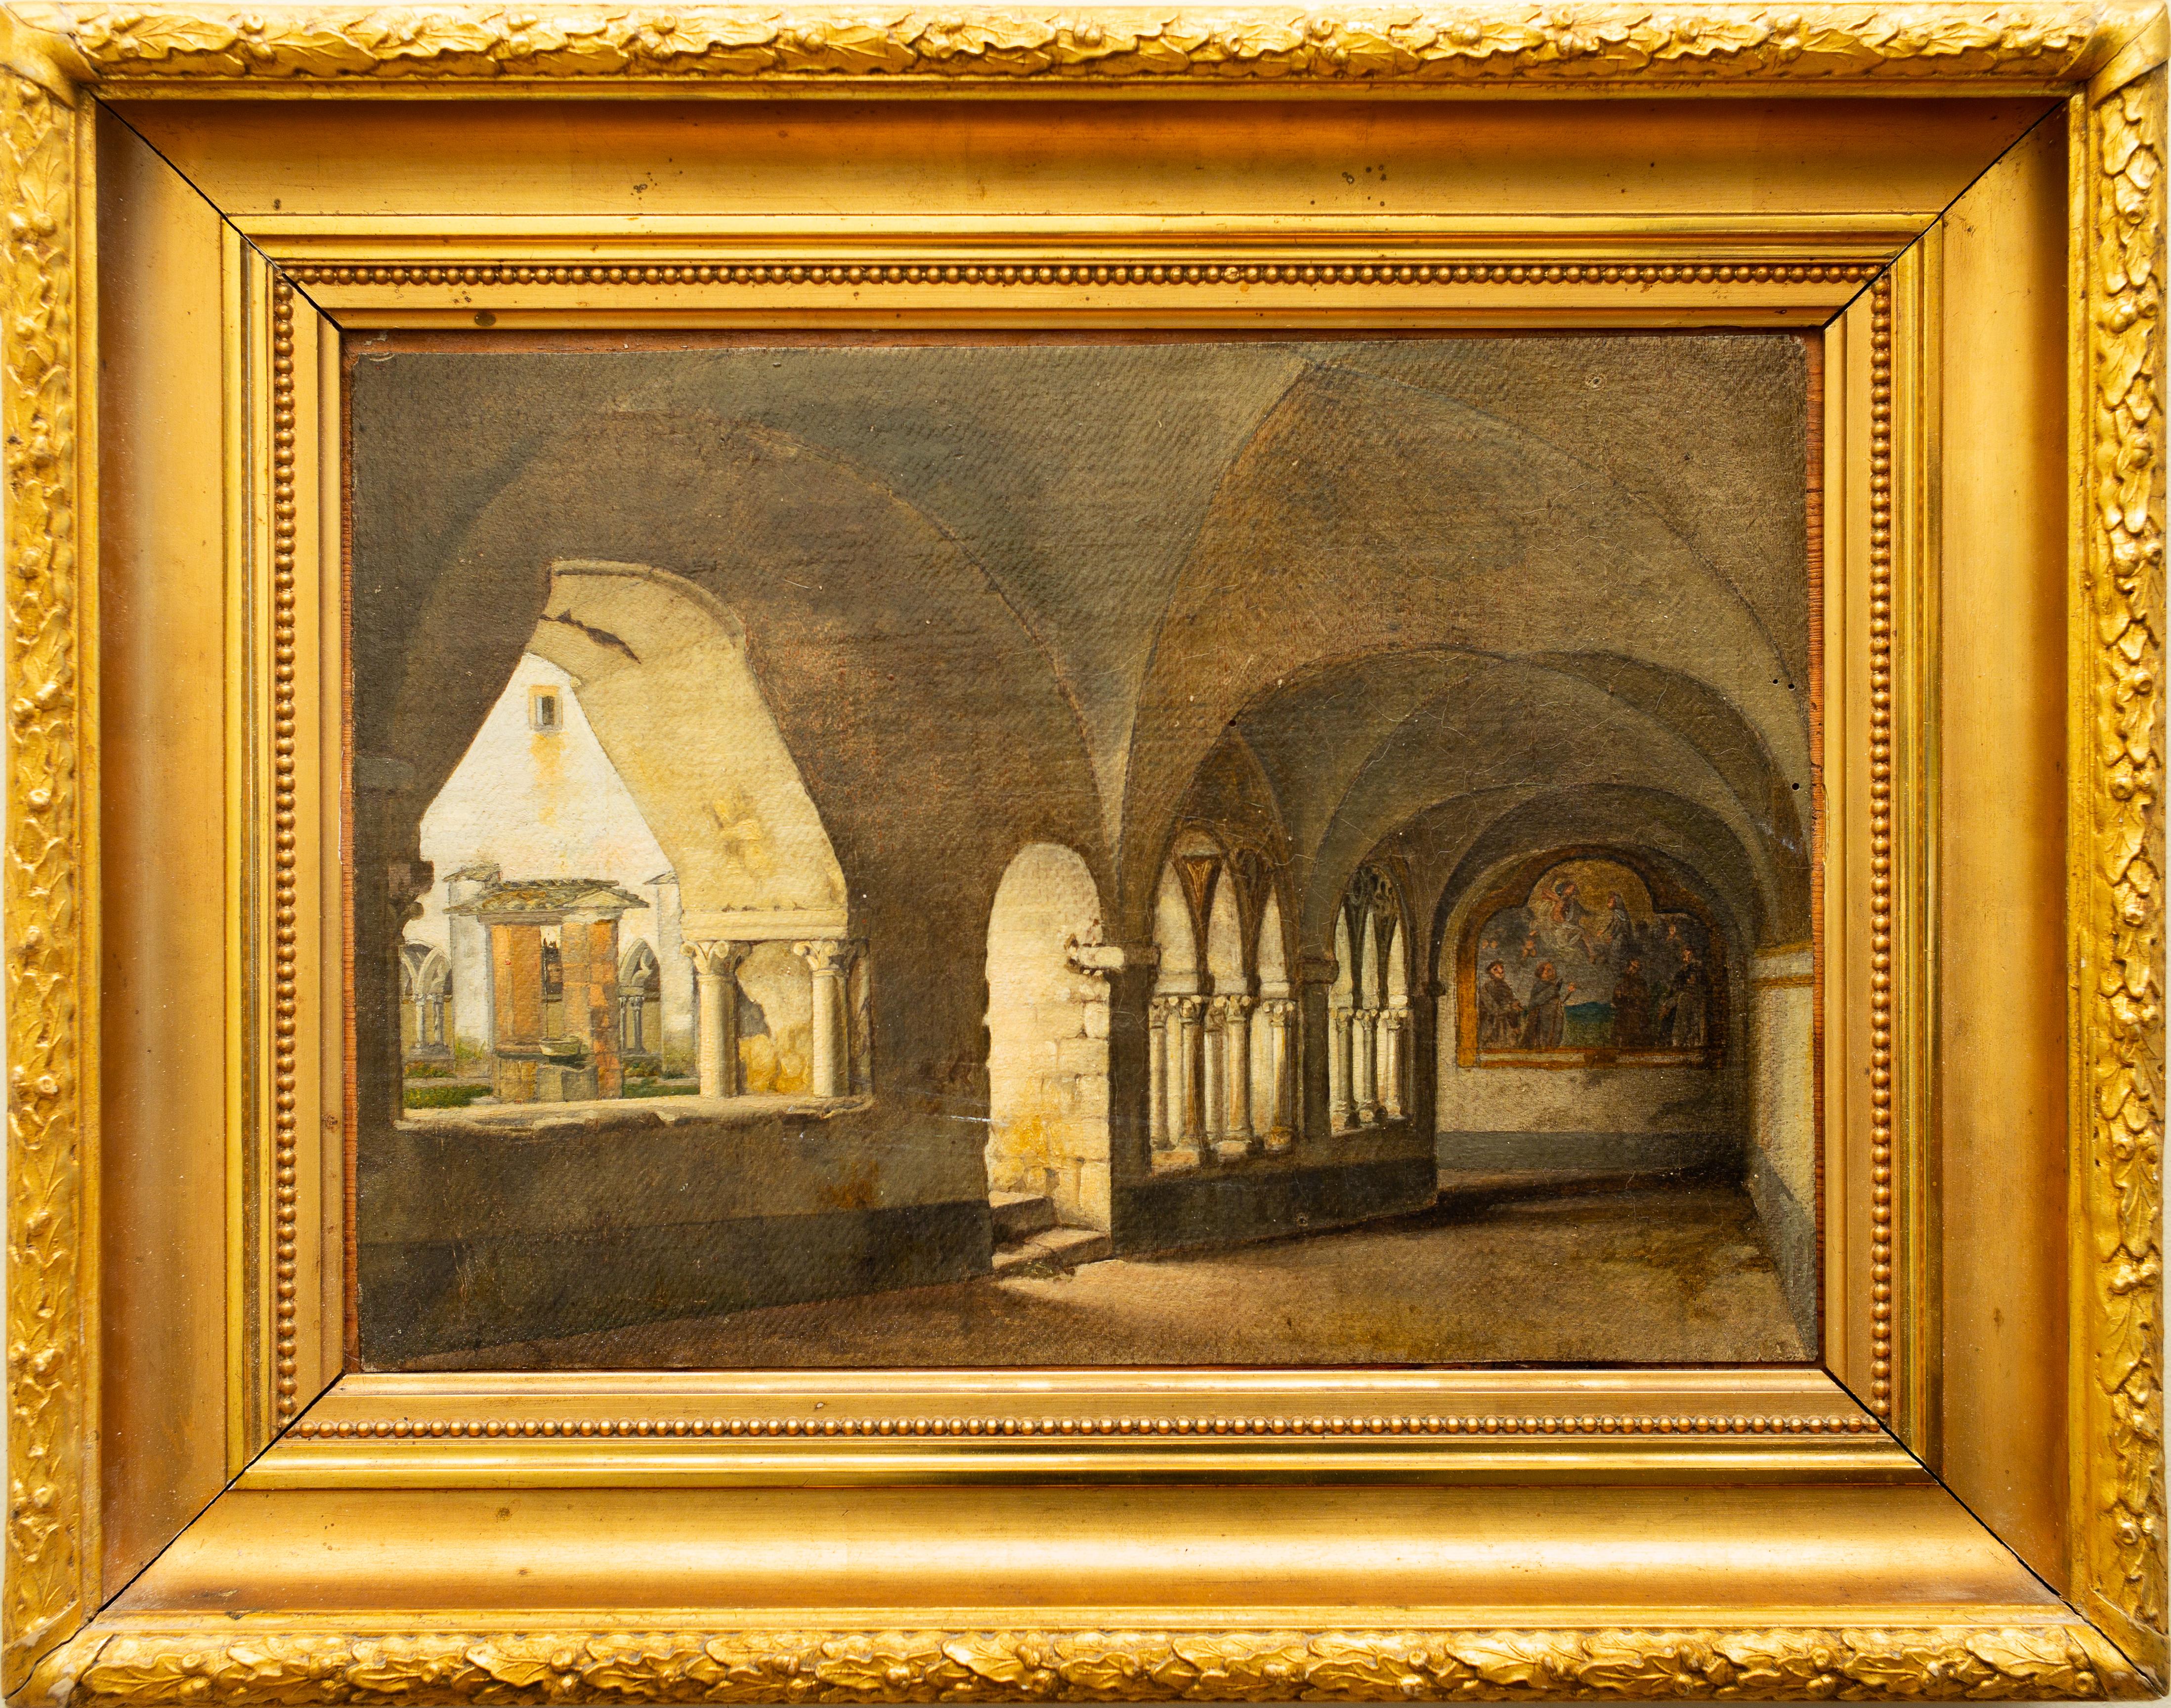 Ditlev Martens war ein dänischer Künstler, der von 1795 bis 1864 lebte und eine Reihe von beeindruckenden Gemälden schuf, die den Betrachter noch heute fesseln und inspirieren. Eines seiner schönsten Werke ist "Der Kreuzgang von Santa Maria del